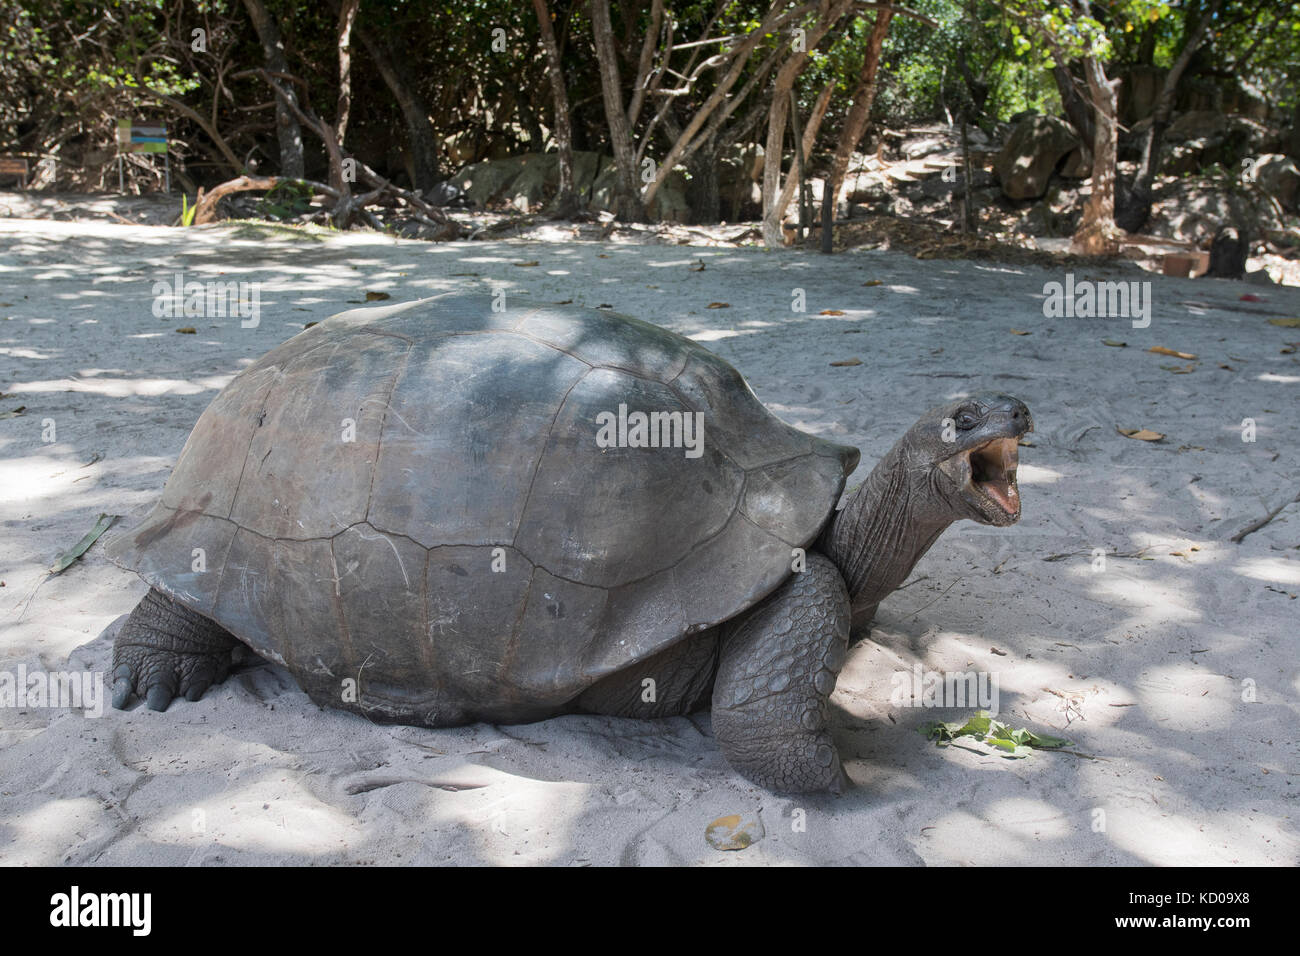 Tortue géante d'Aldabra (aldabrachelys gigantea), Praslin, seychelles Banque D'Images